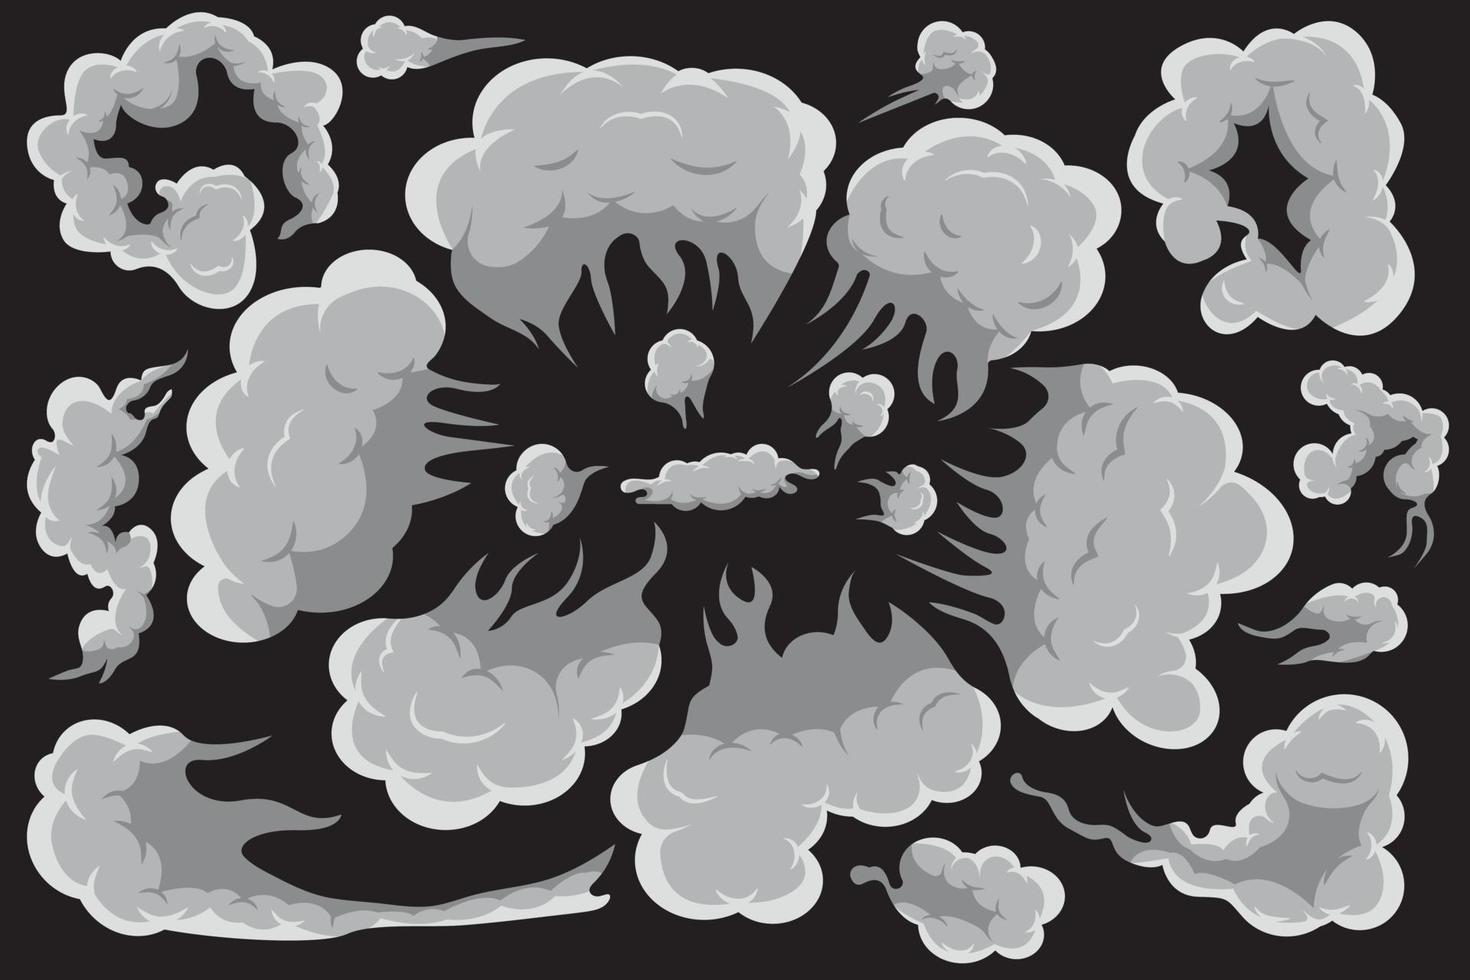 ensemble de nuages blancs stylisés. collection d'illustration vectorielle de fumée. vecteur